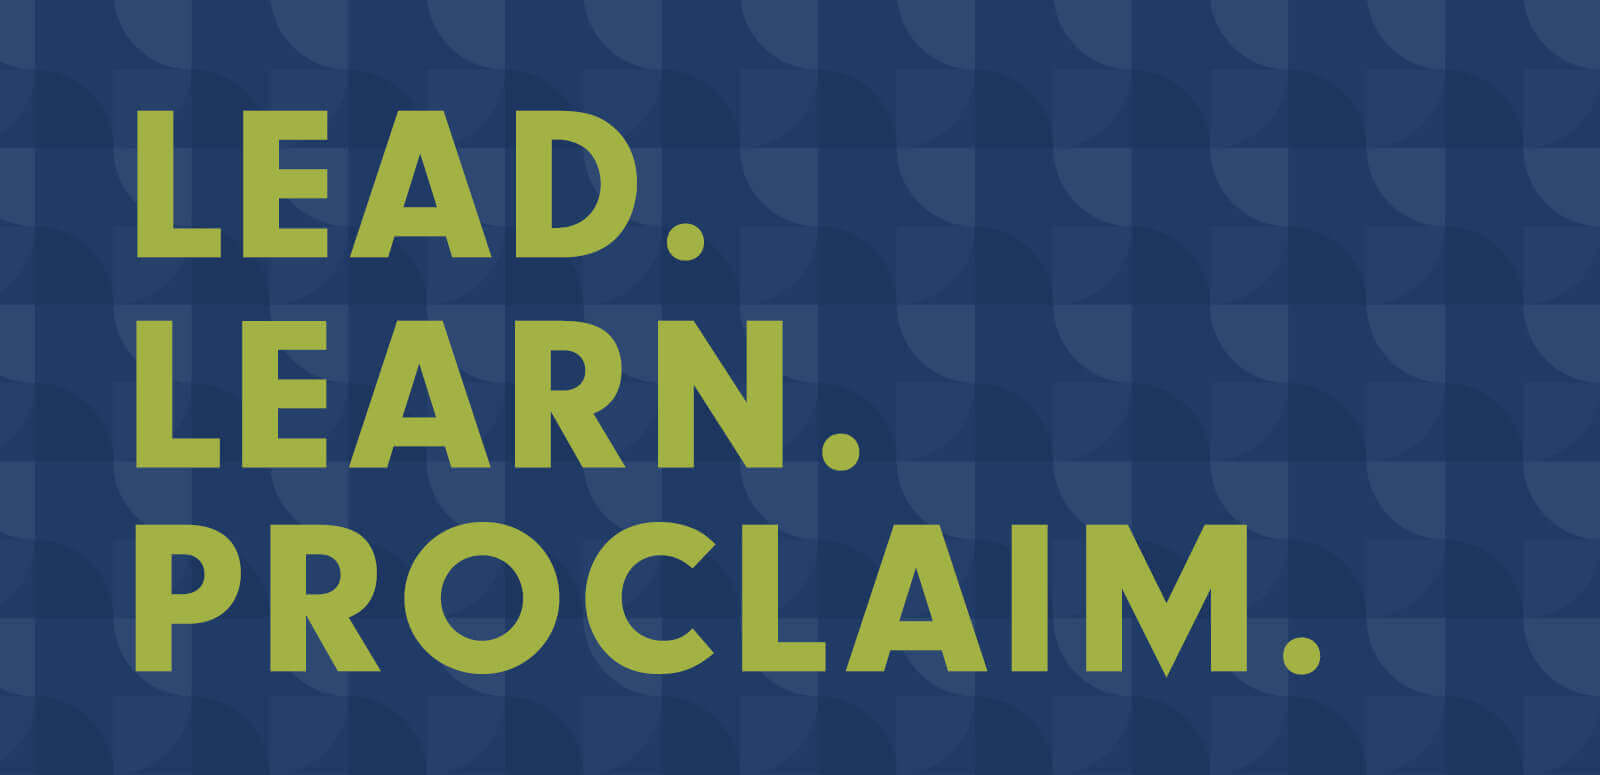 NCEA - lead, learn, proclaim tagline